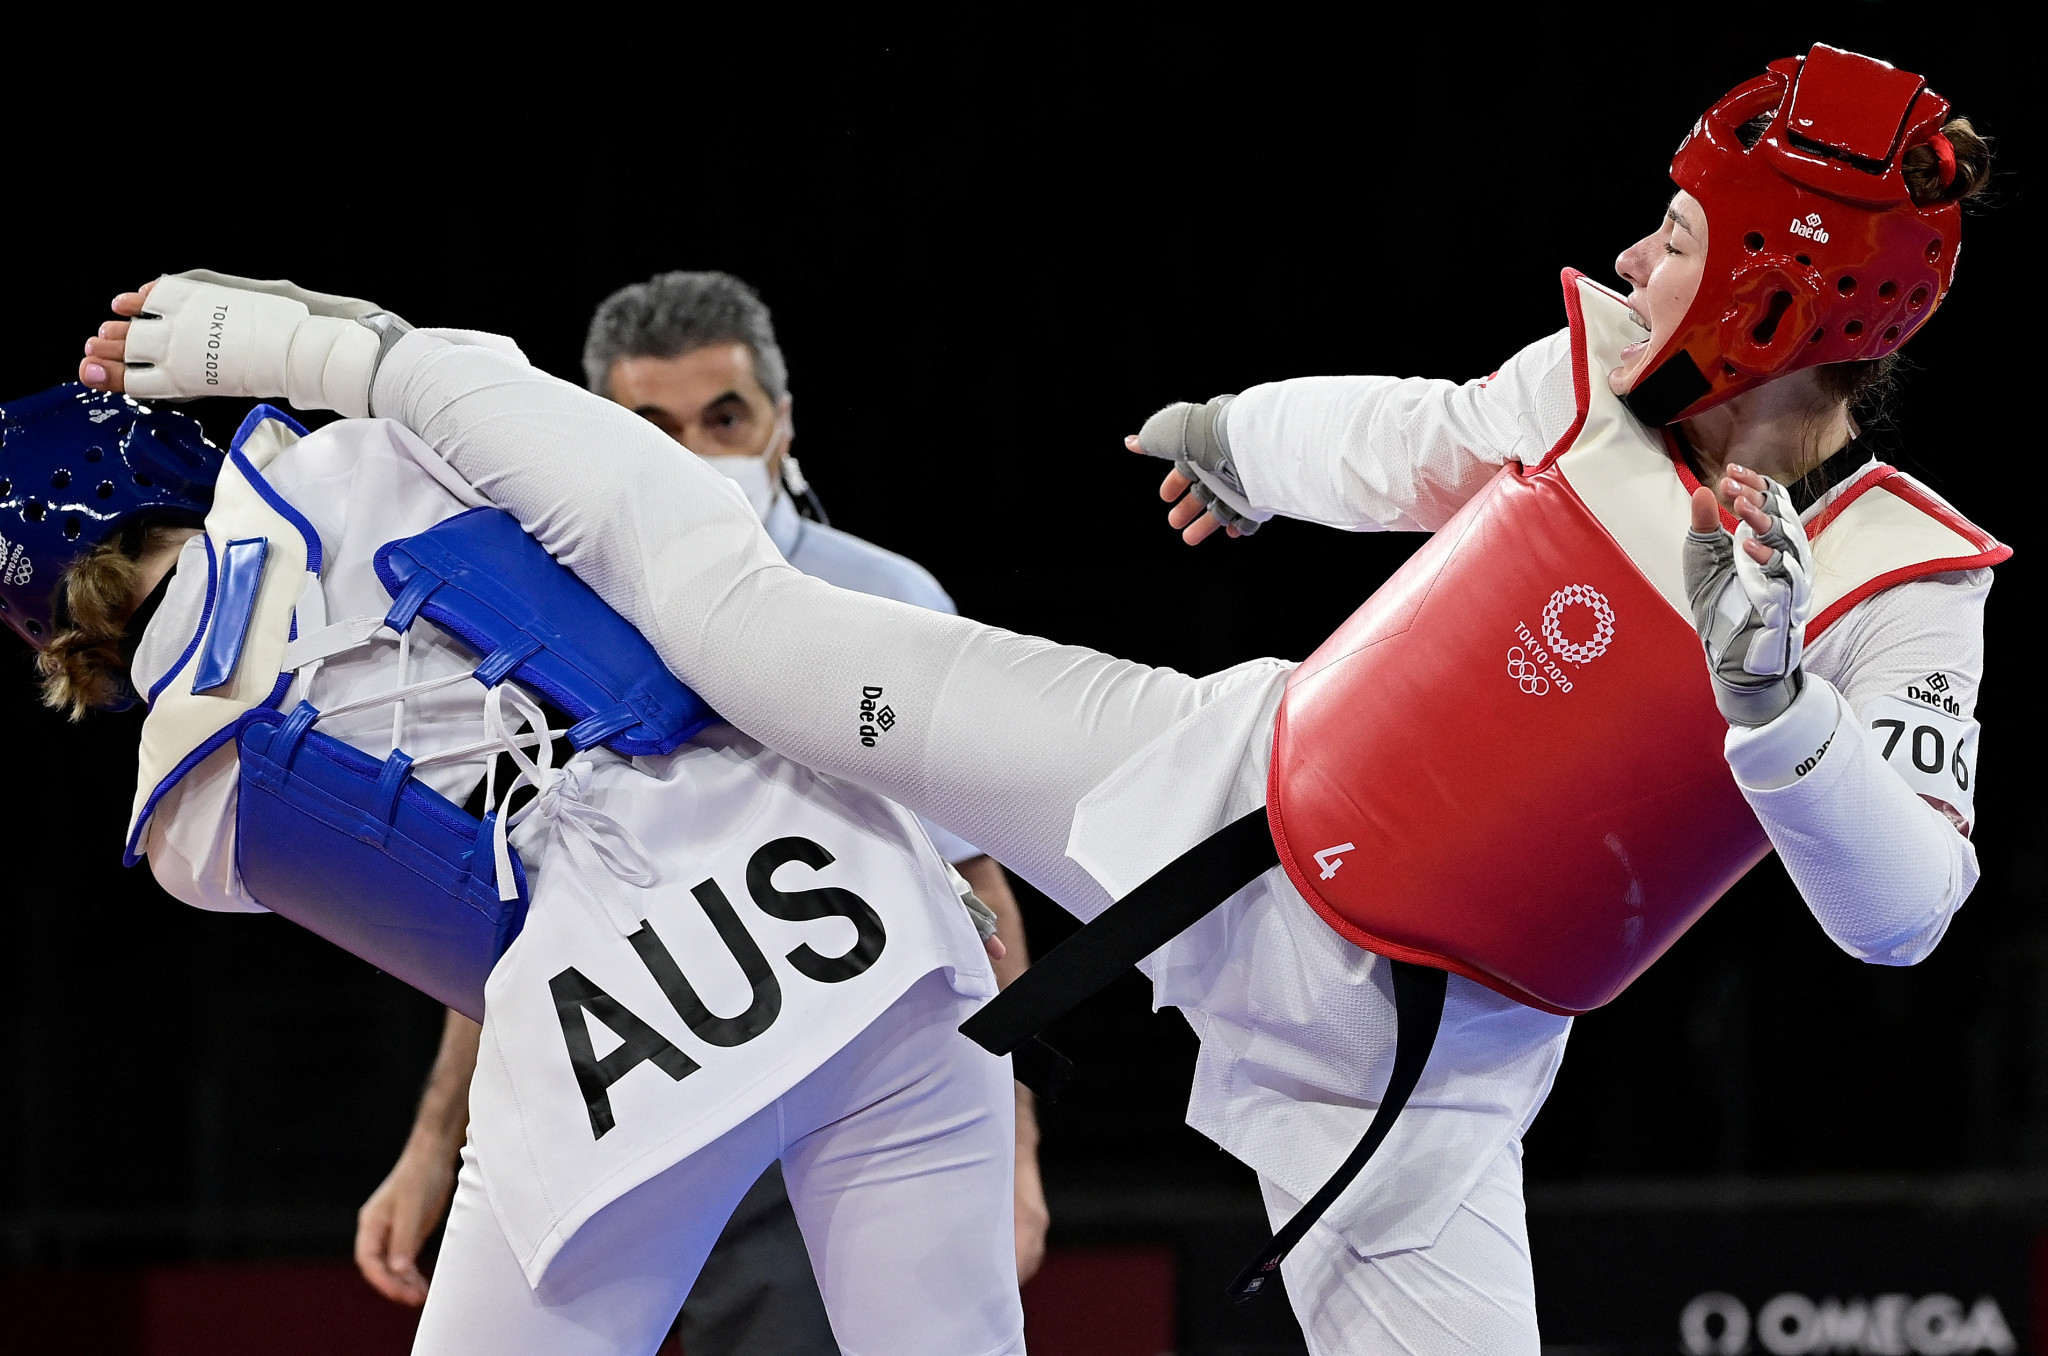 Australian Taekwondo seeking coaches to take club athletes through to international level